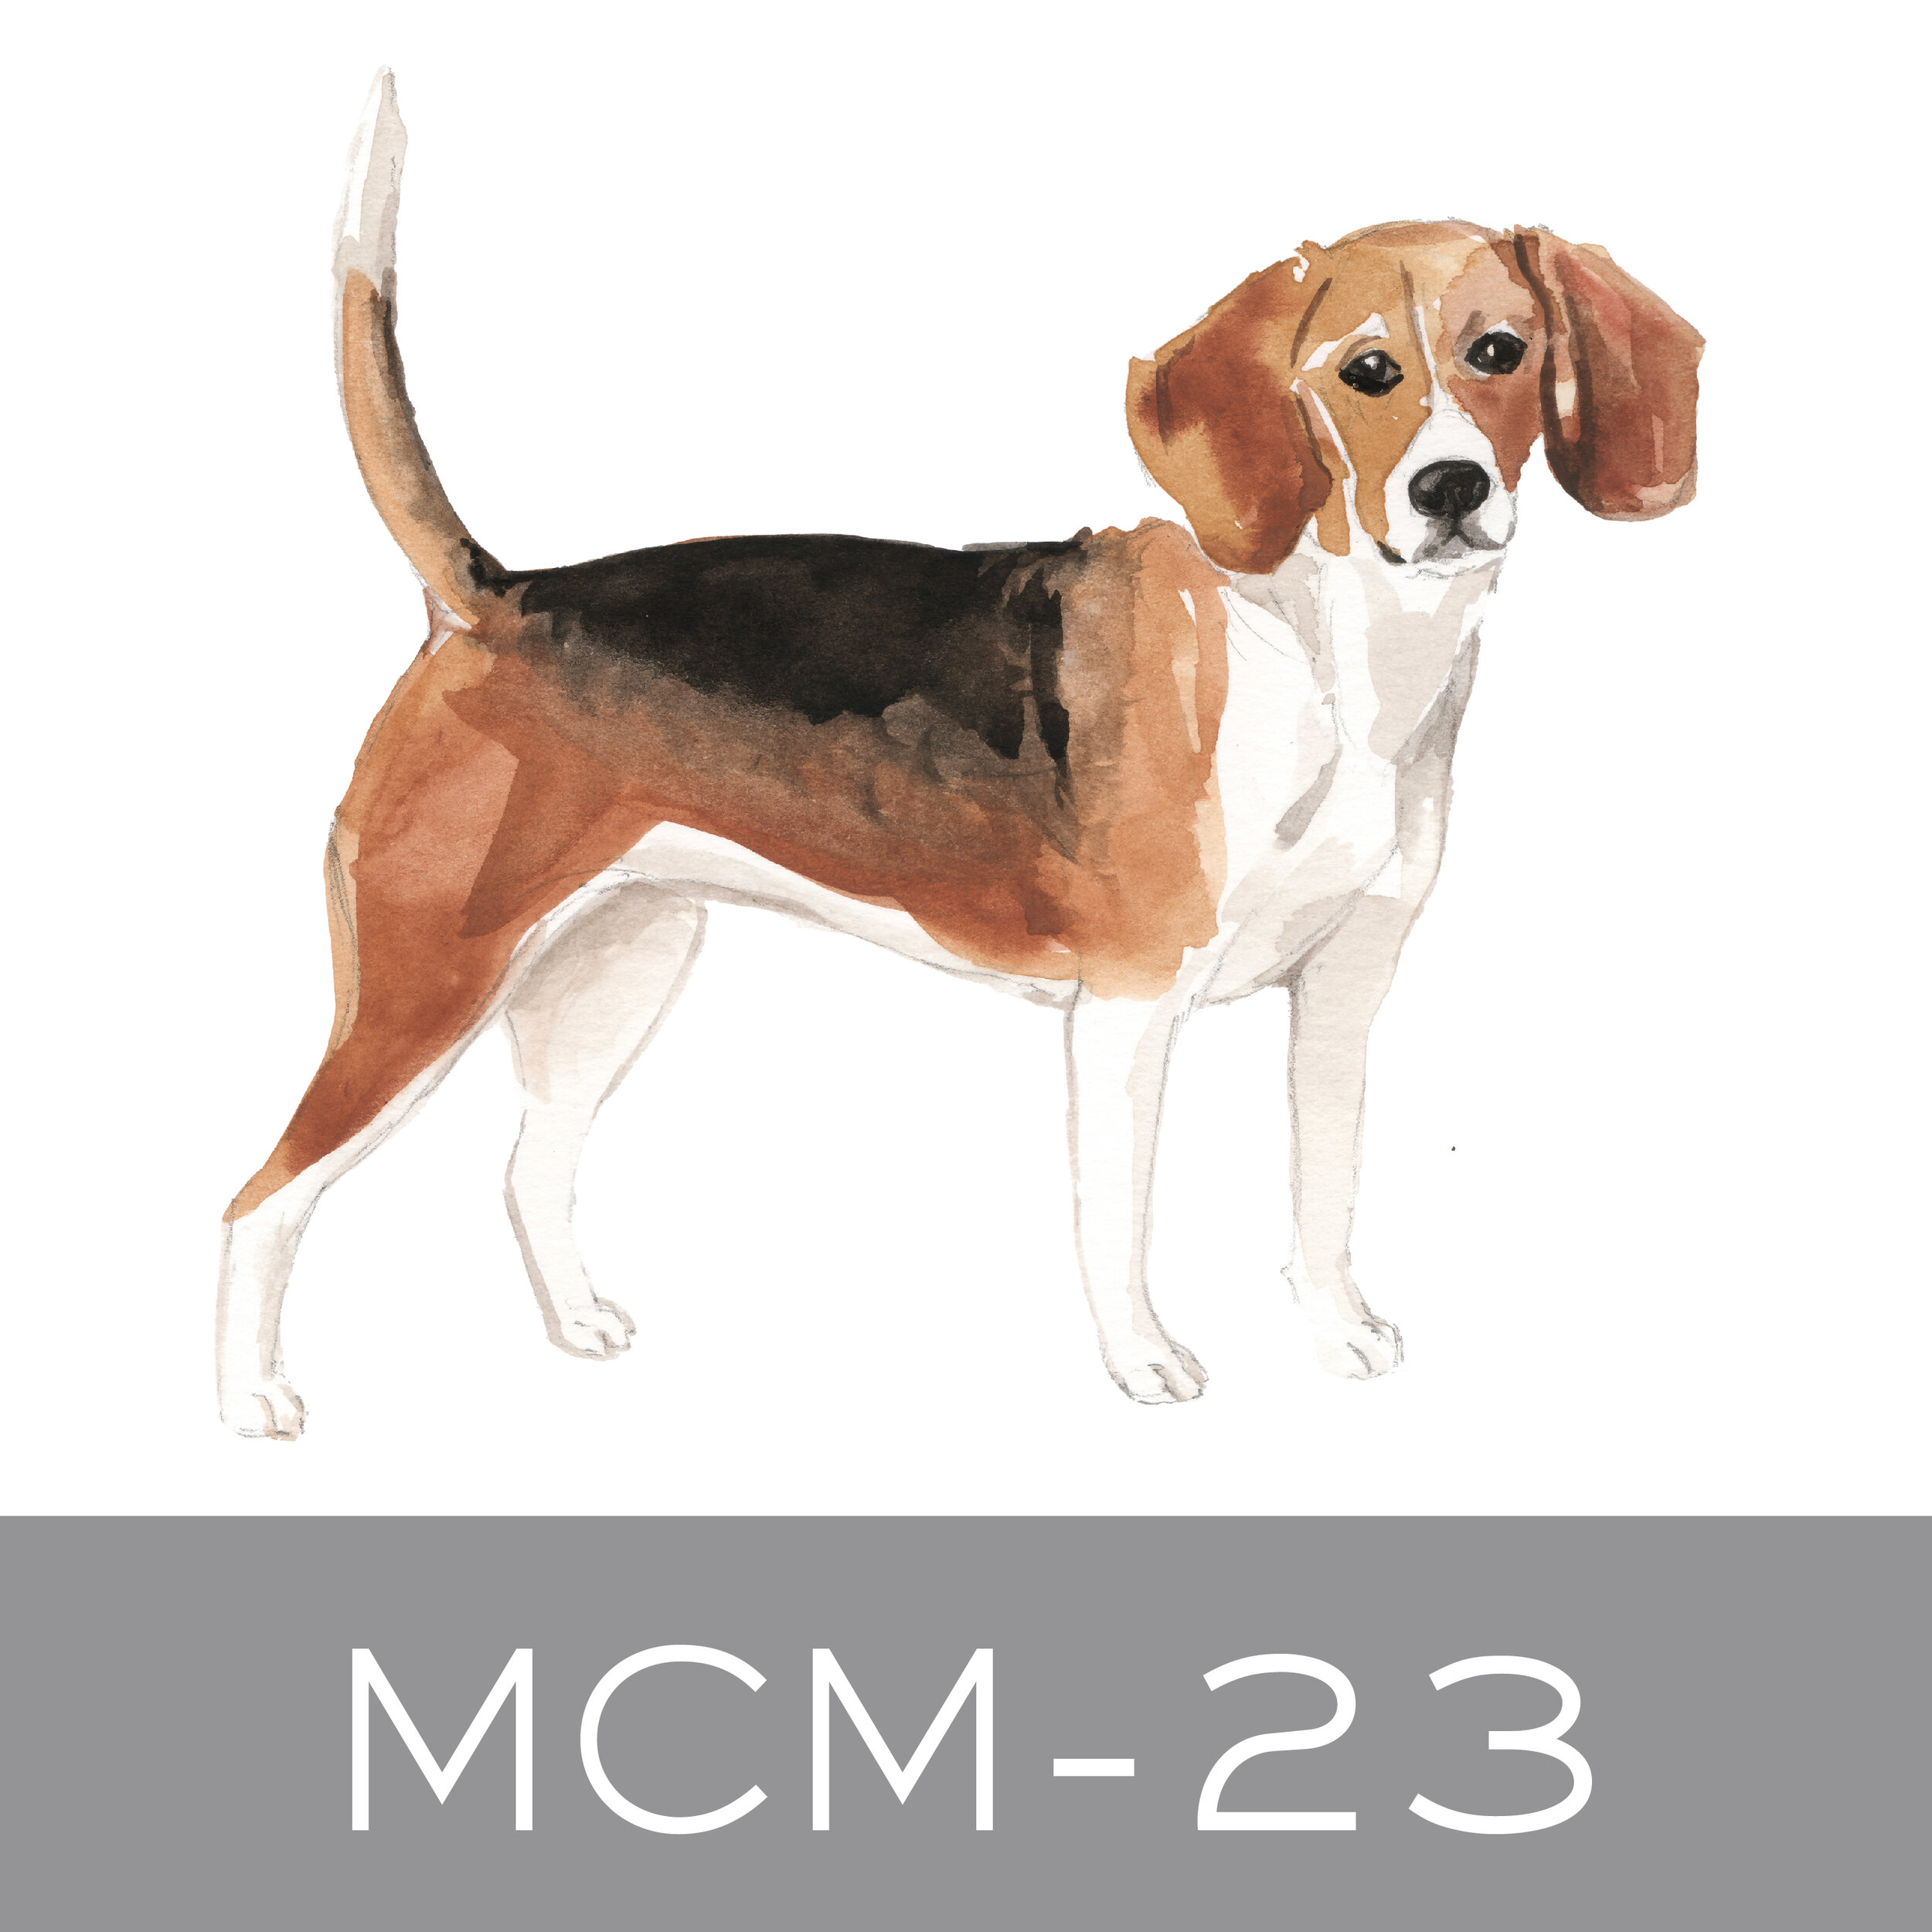 MCM-23.jpg